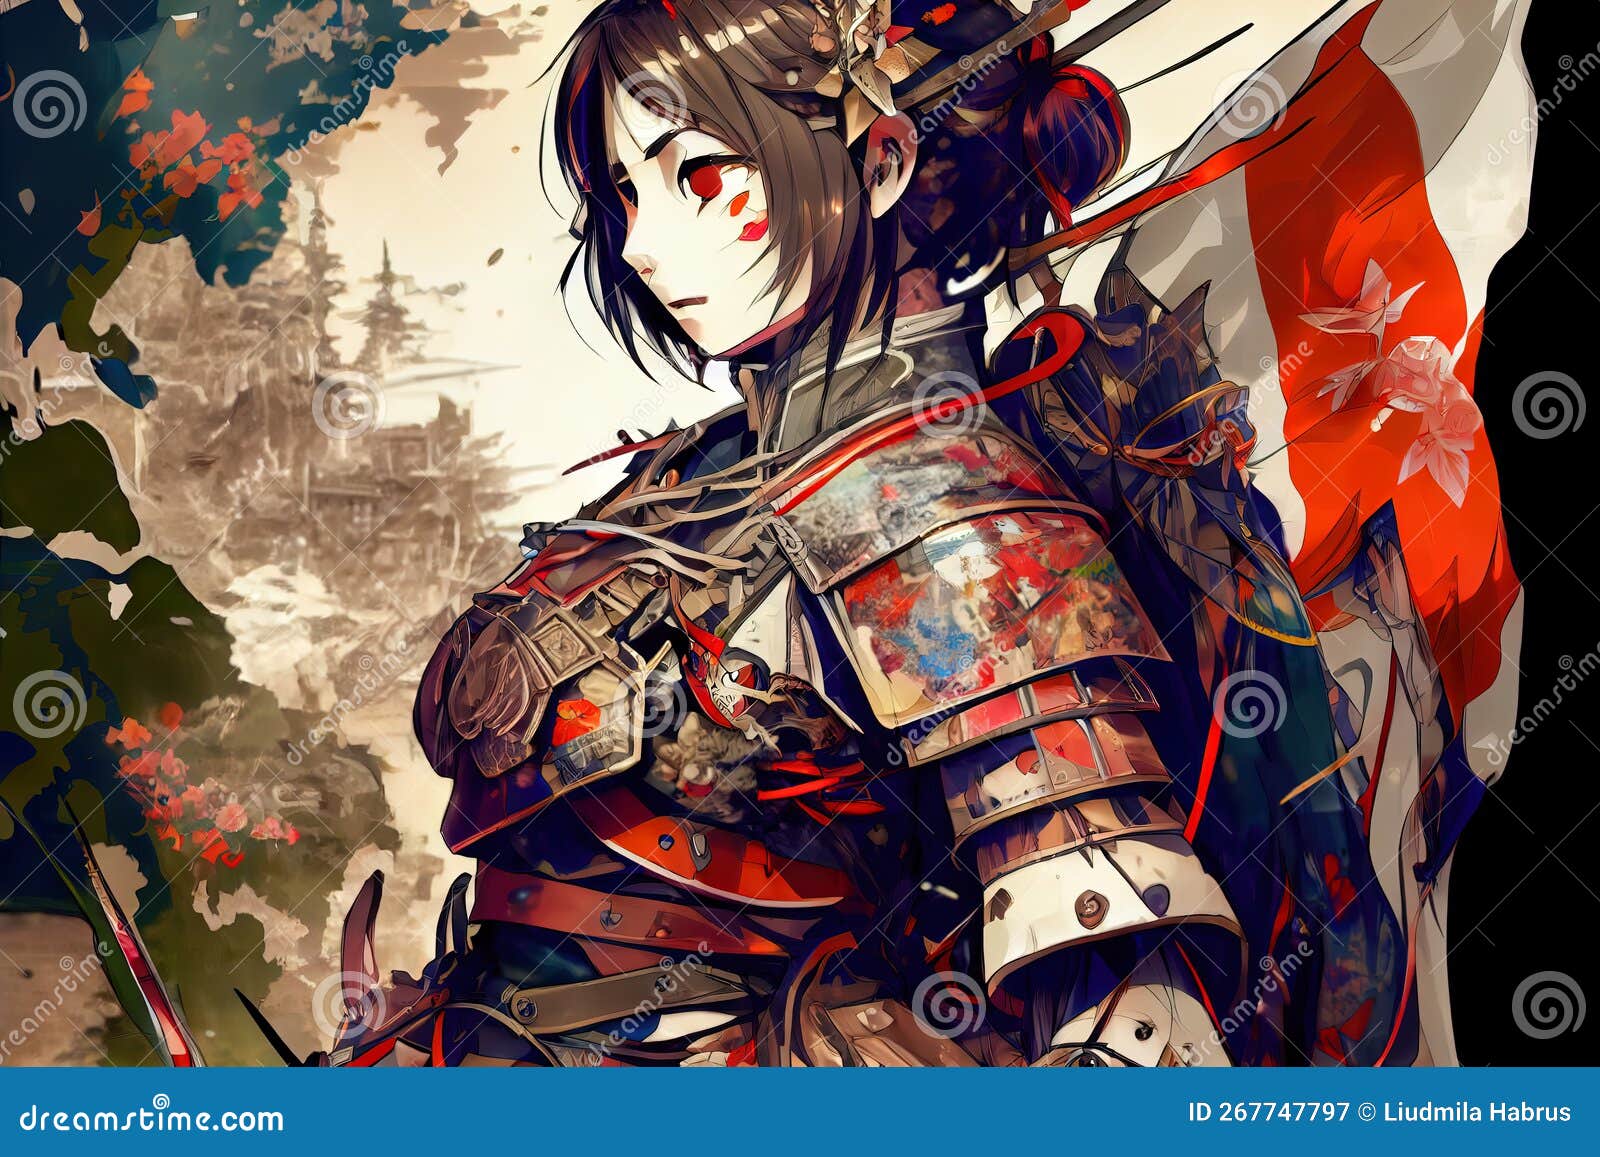 desiree ehlers recommends anime samurai female pic